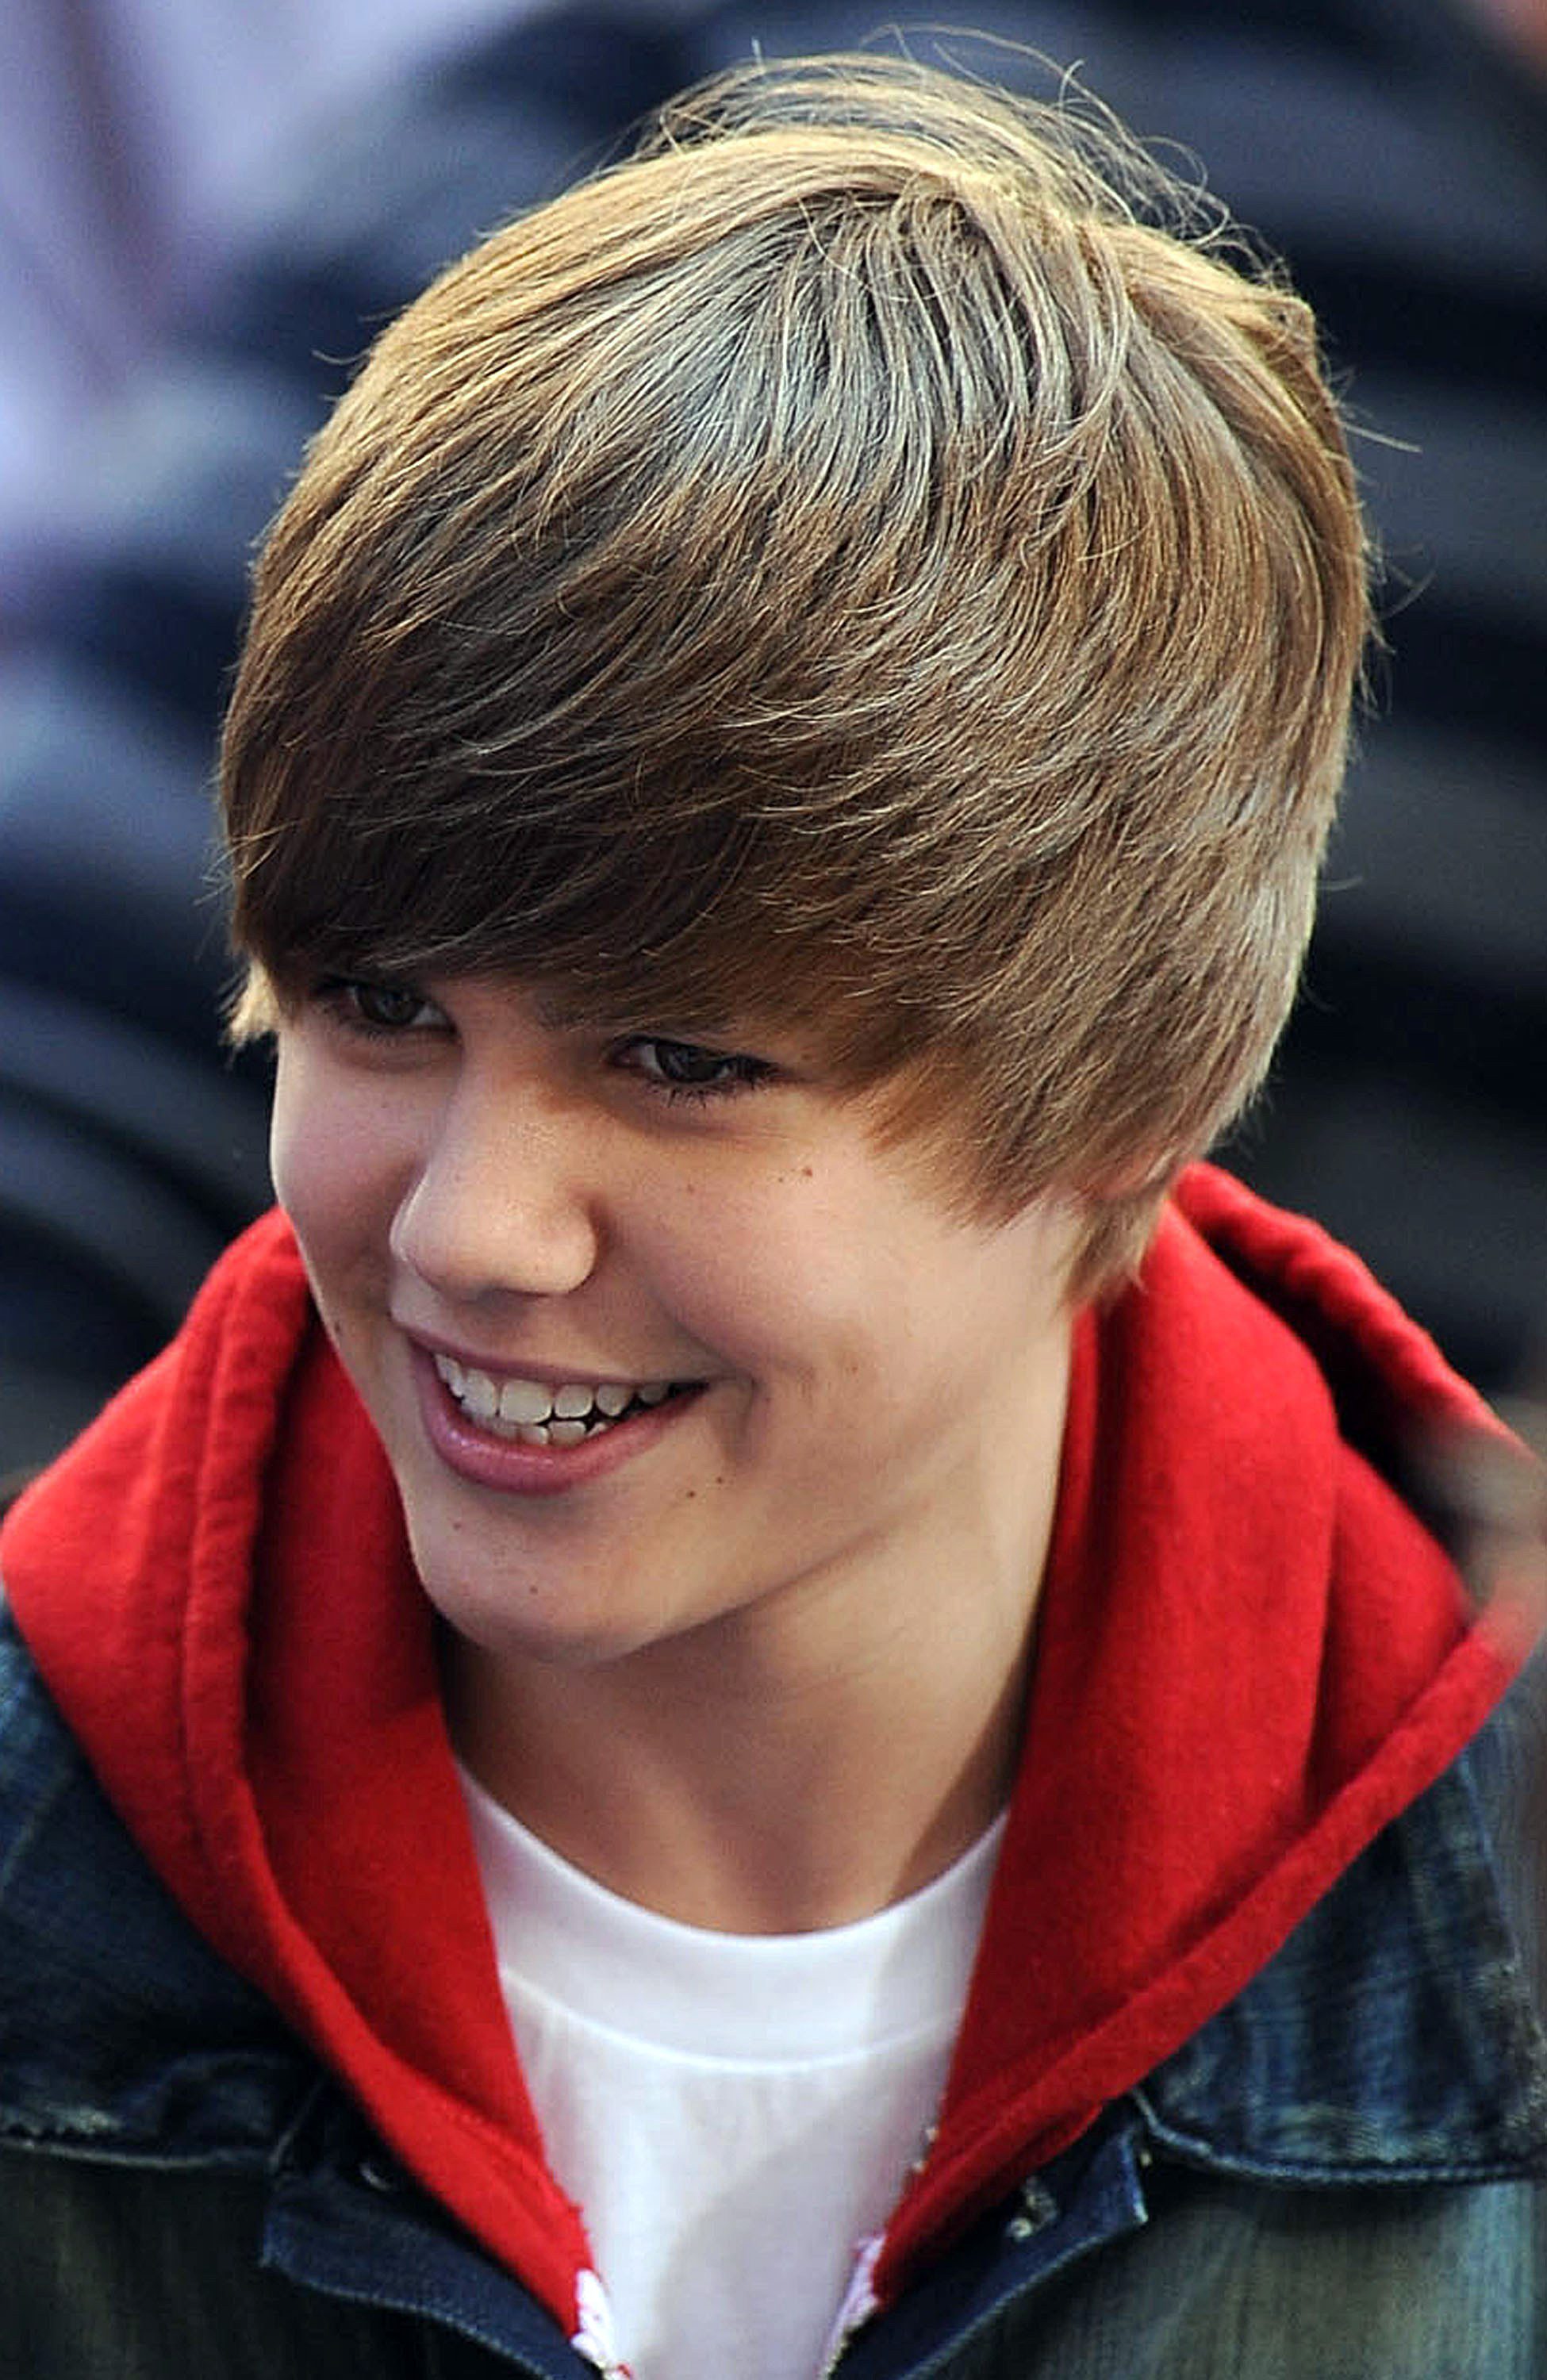 The Justin Bieber Haircut